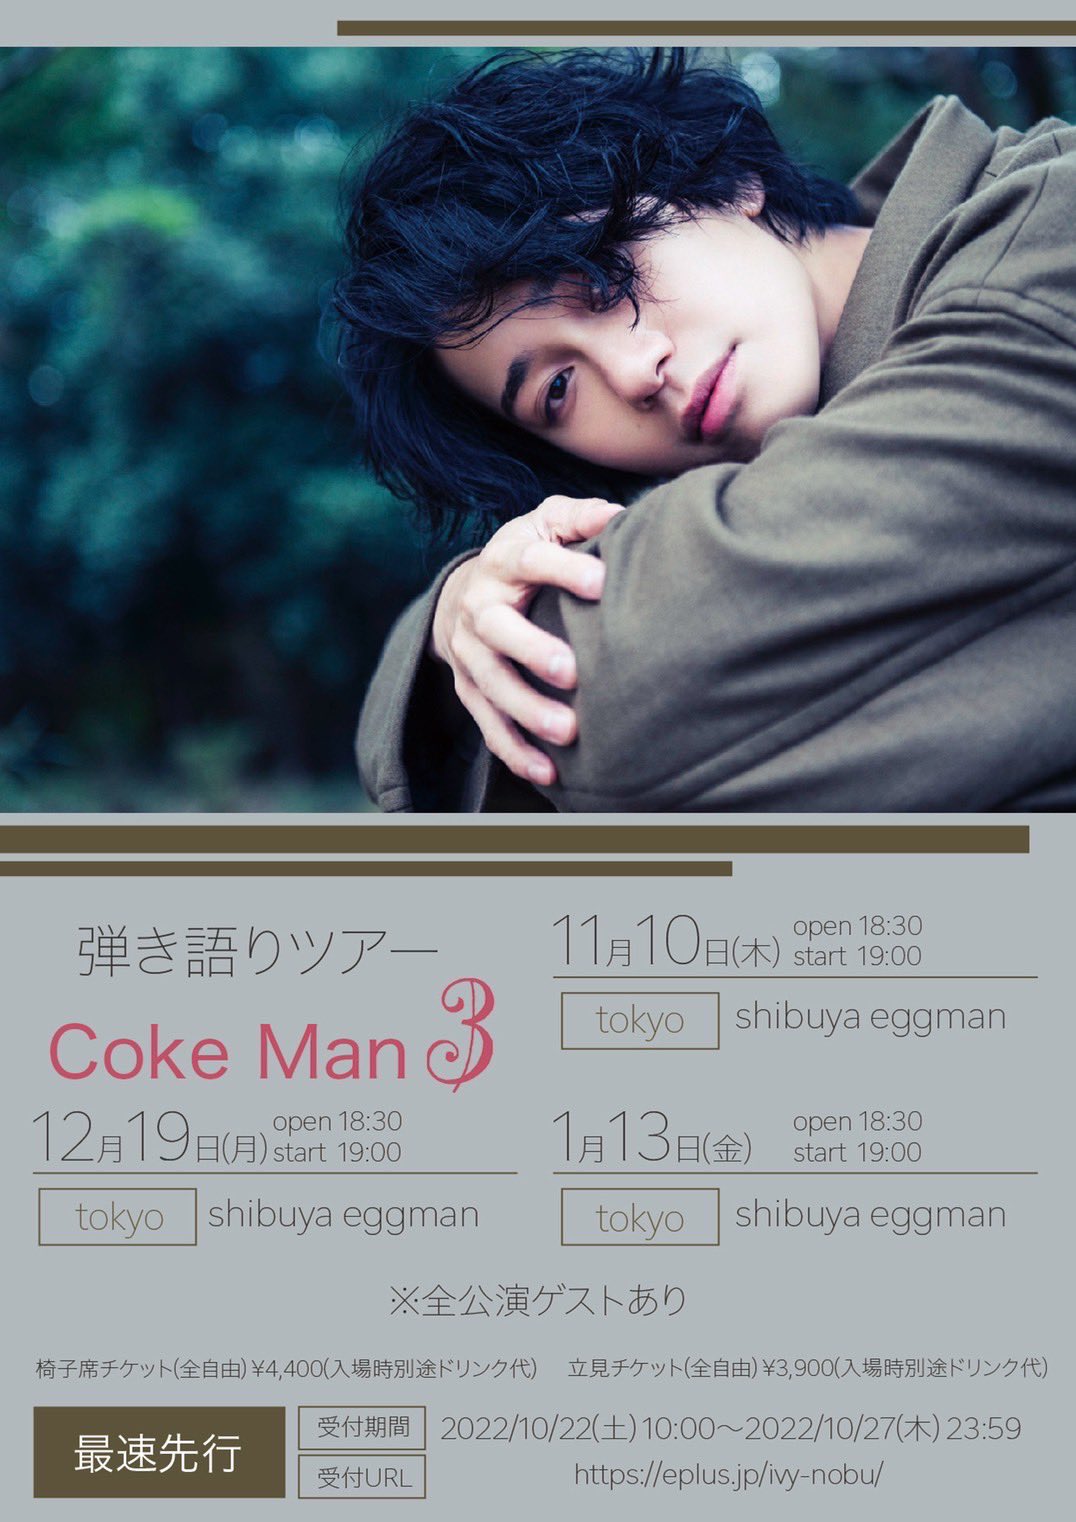 寺口宣明弾き語りツアー “Coke Man3”